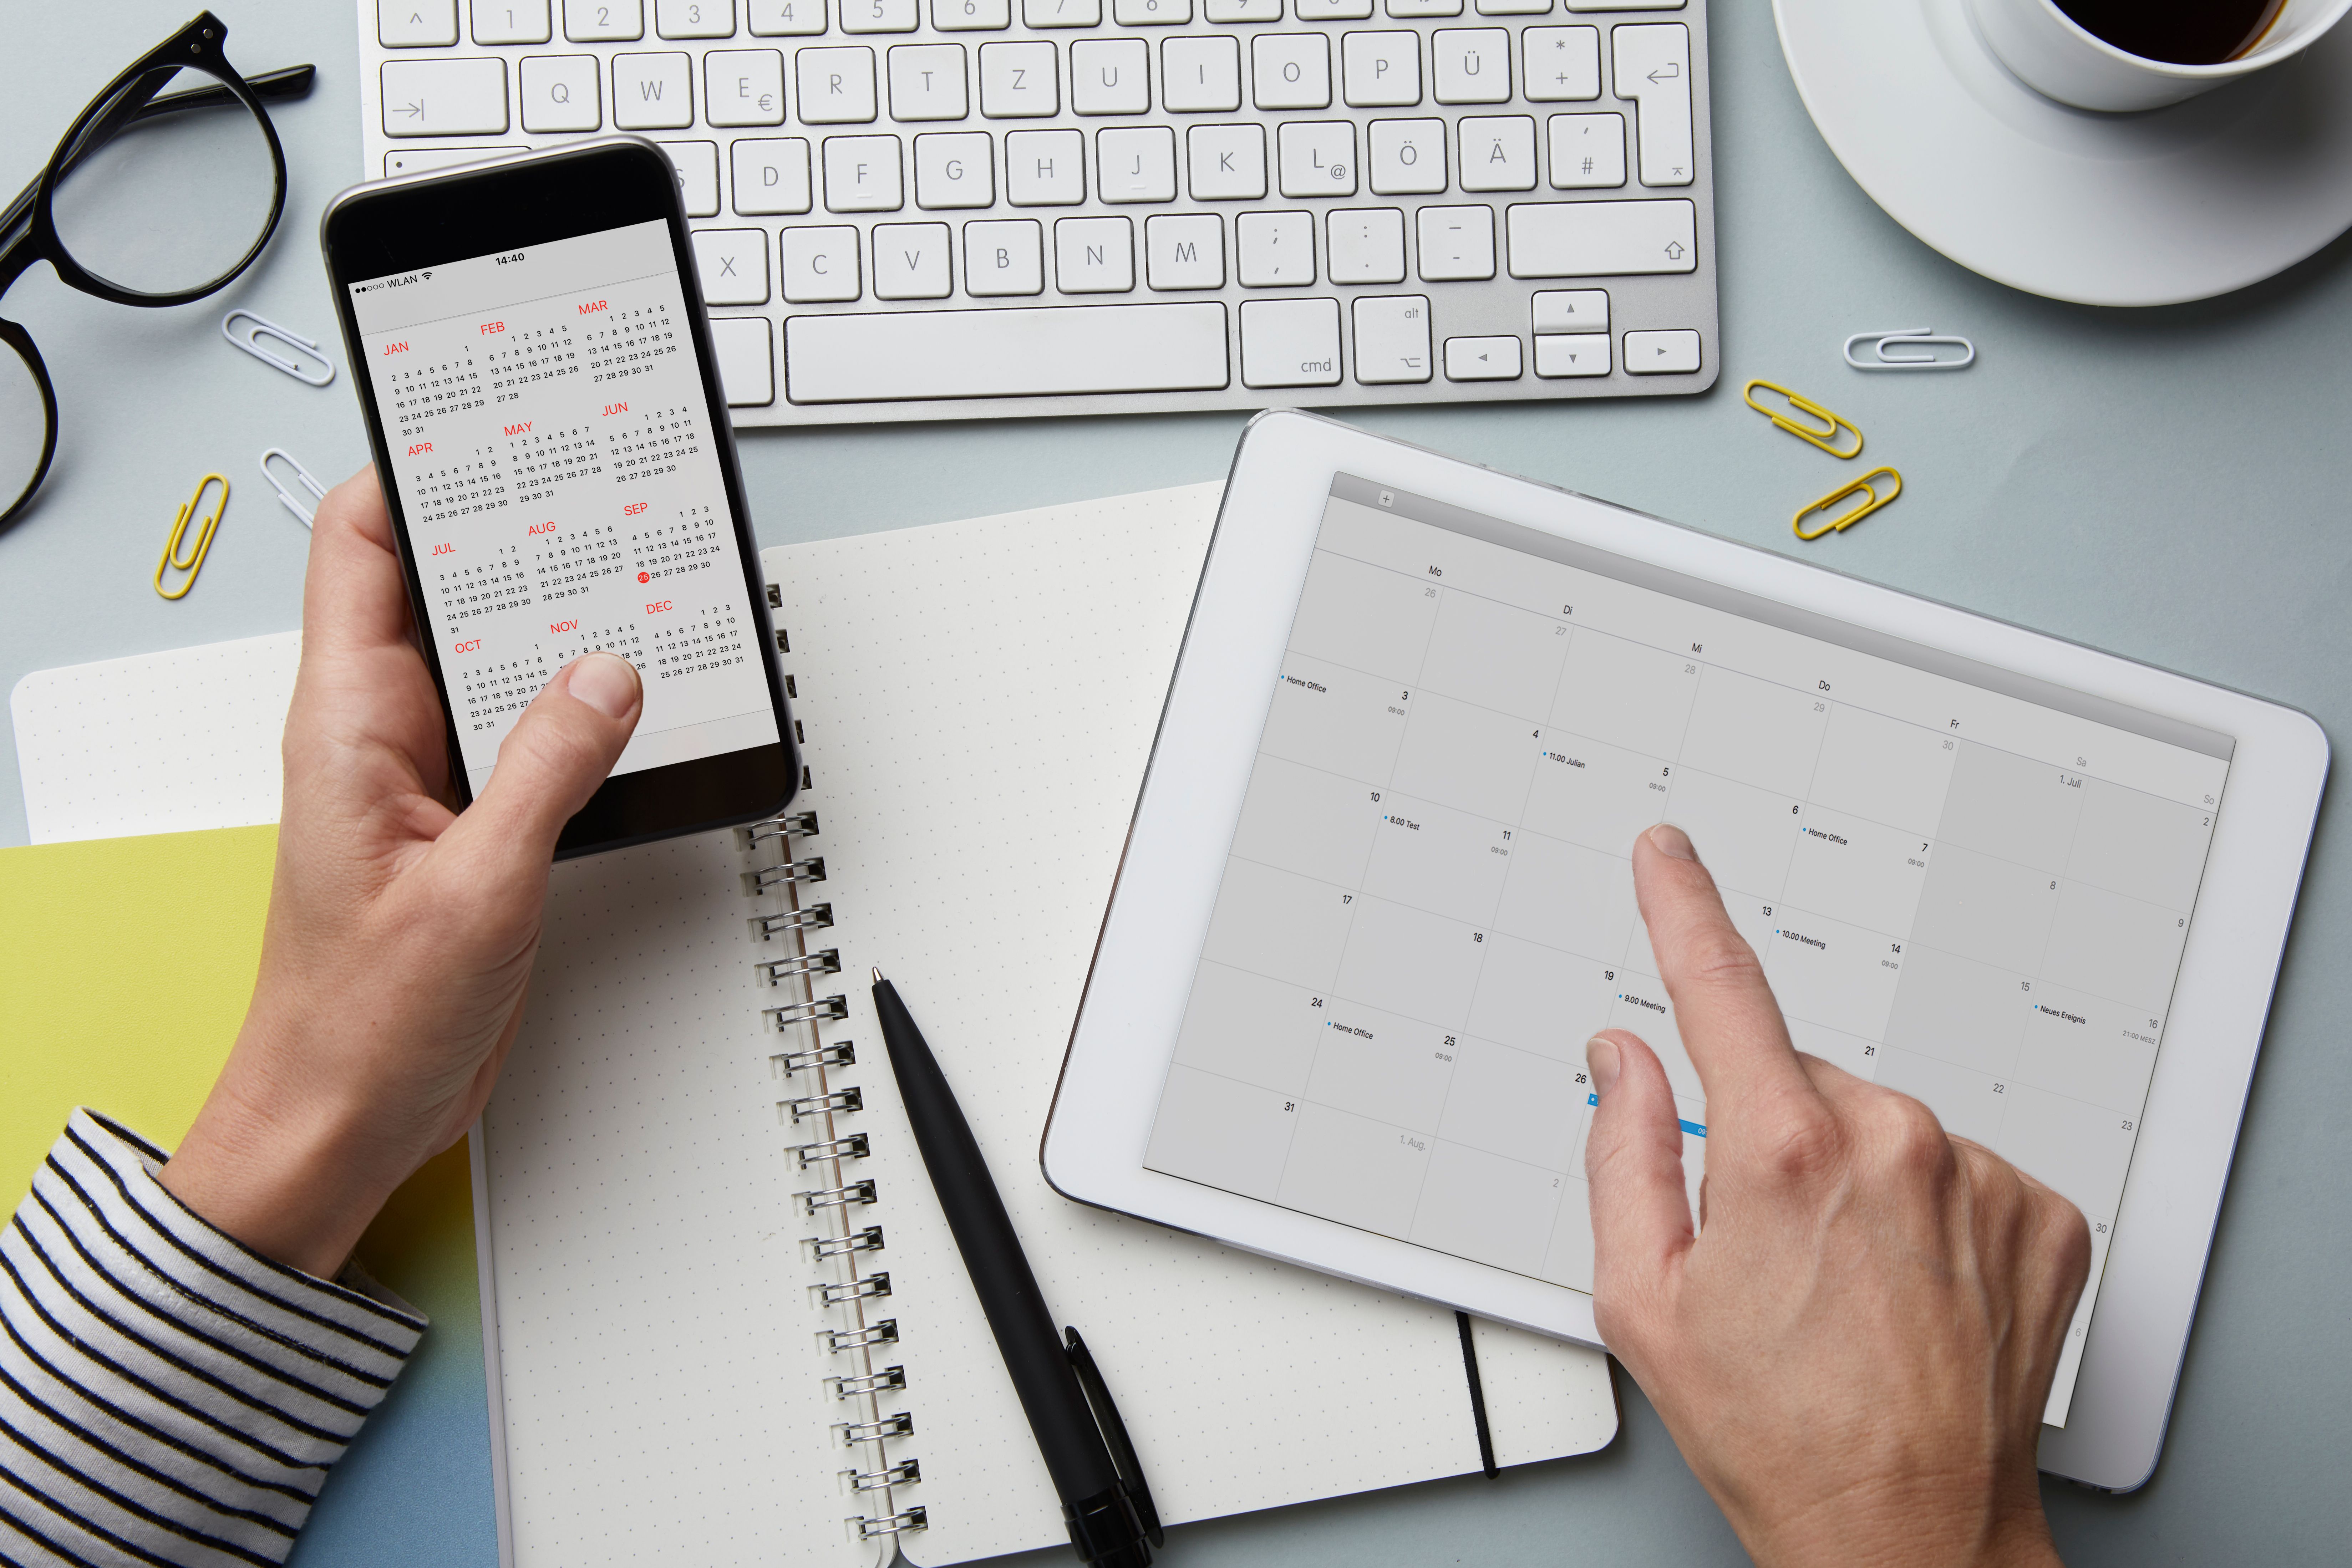 Les calendriers s'ouvrent sur un téléphone et une tablette. | Source : Getty Images